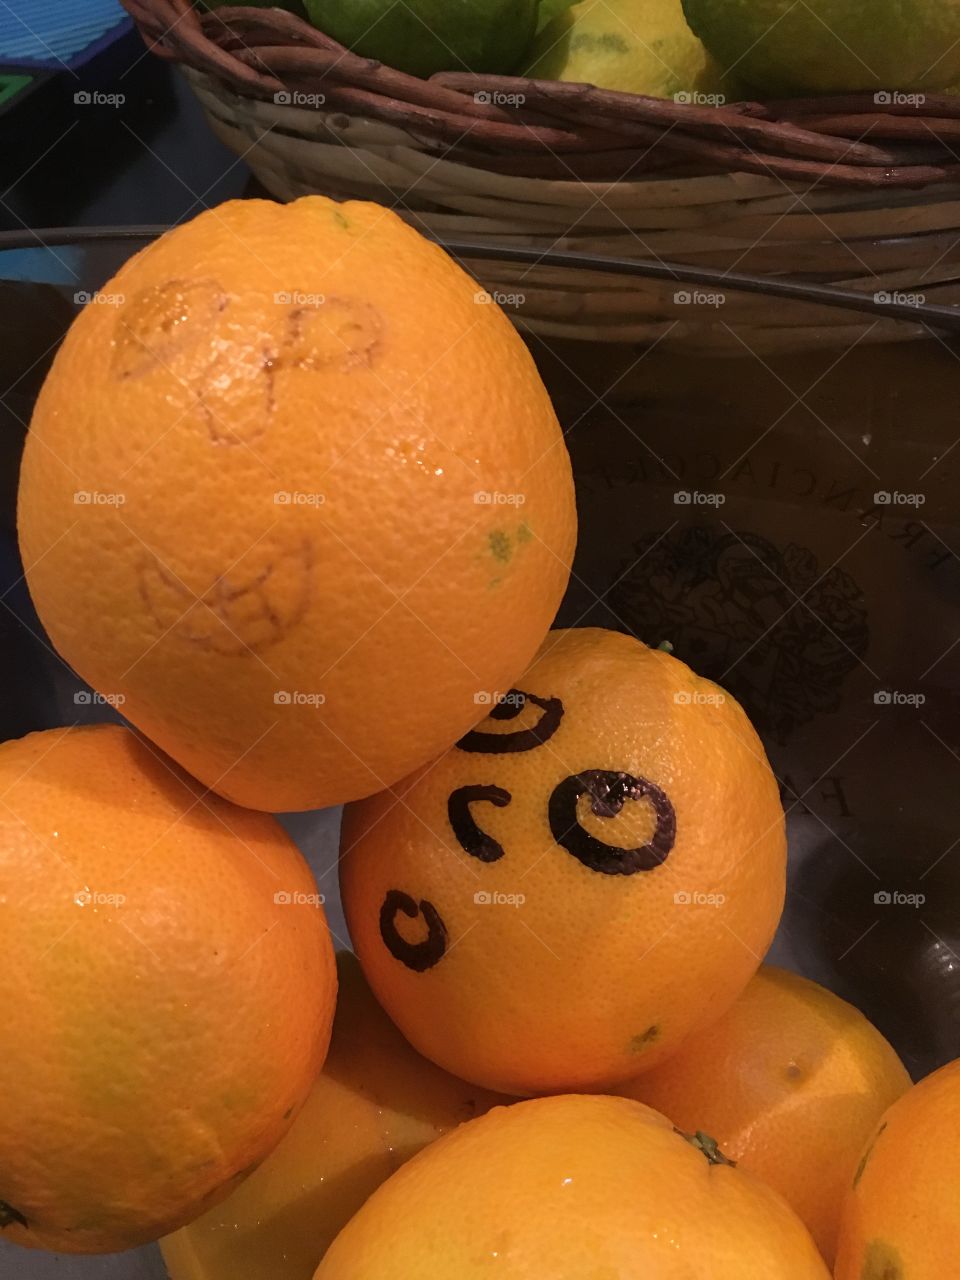 Orange friends